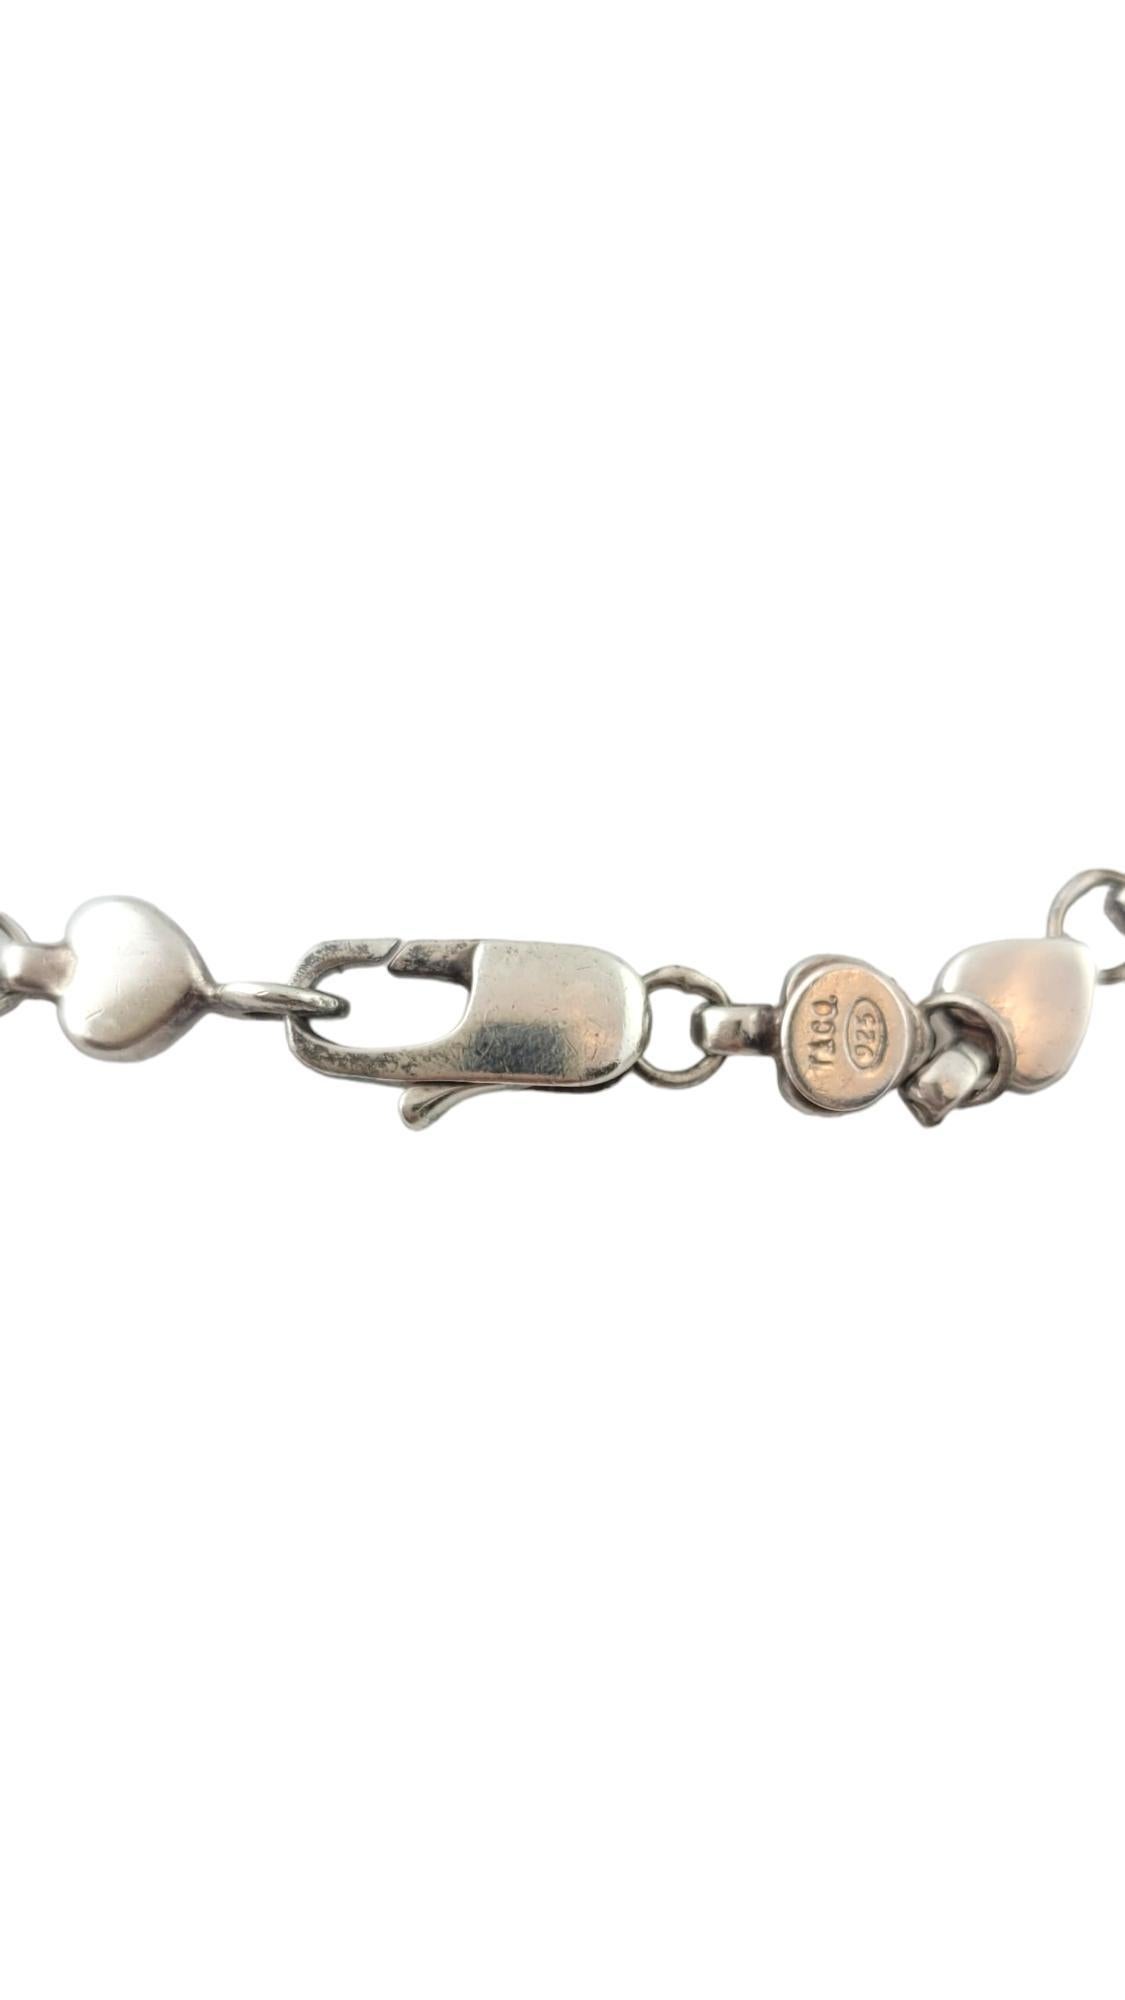 Vintage Tiffany & Co. Sterling Silver Heart Chain Bracelet #17392 1